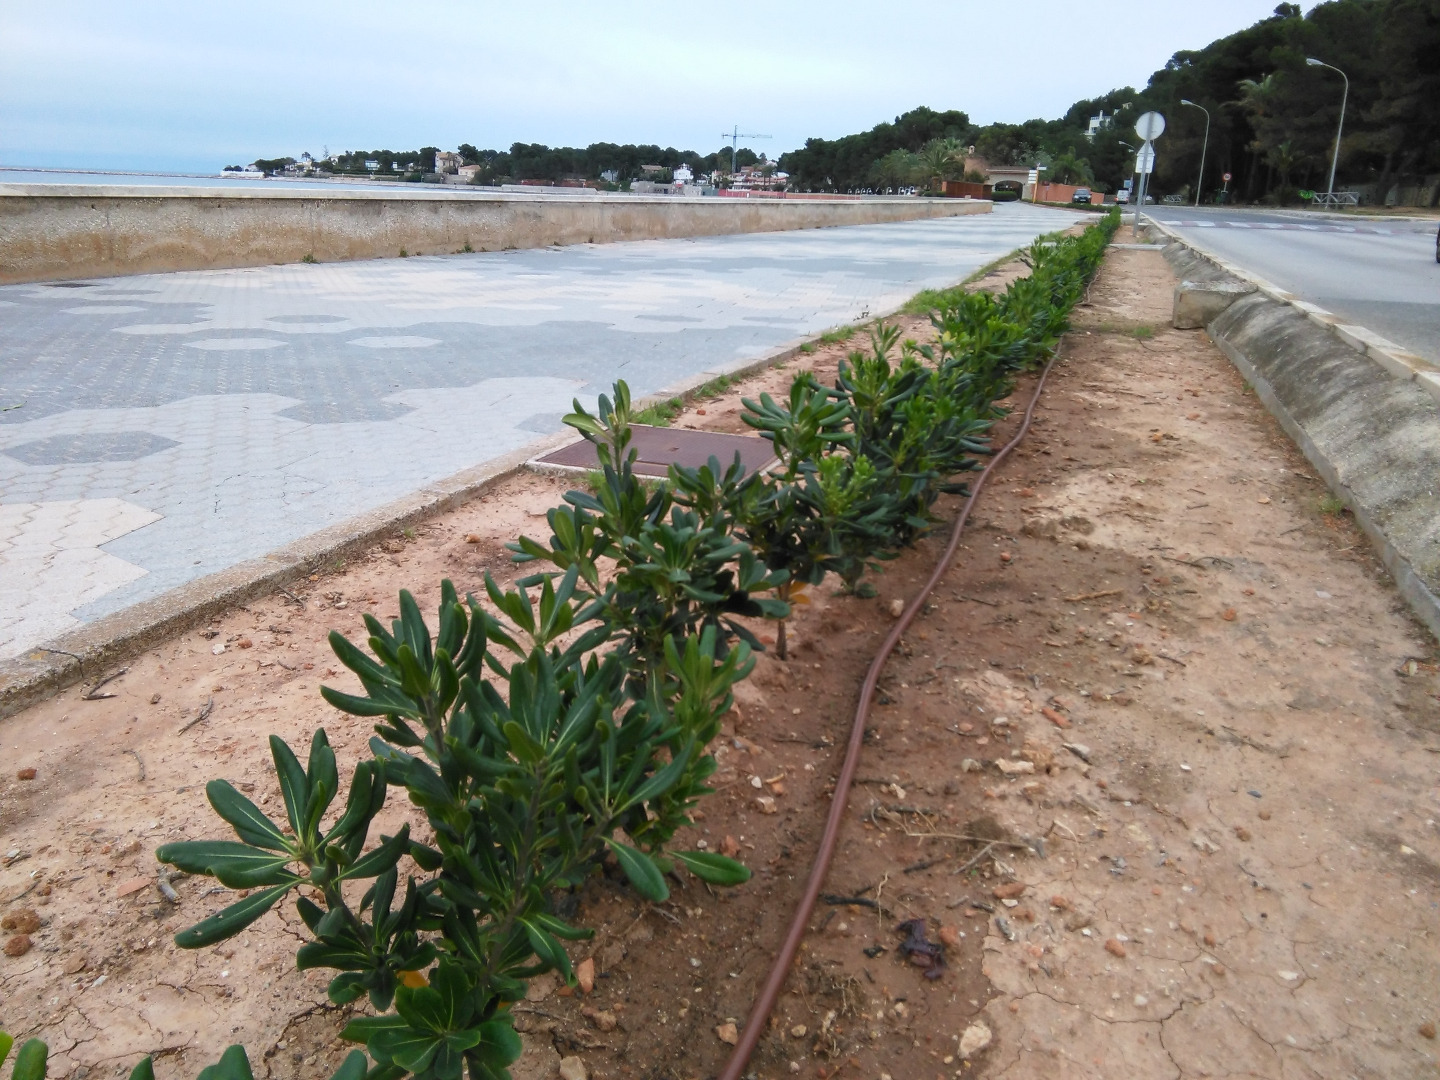 Parques y Jardines realiza trabajos de adecuación y replantación en el paseo de la Marineta Cassiana